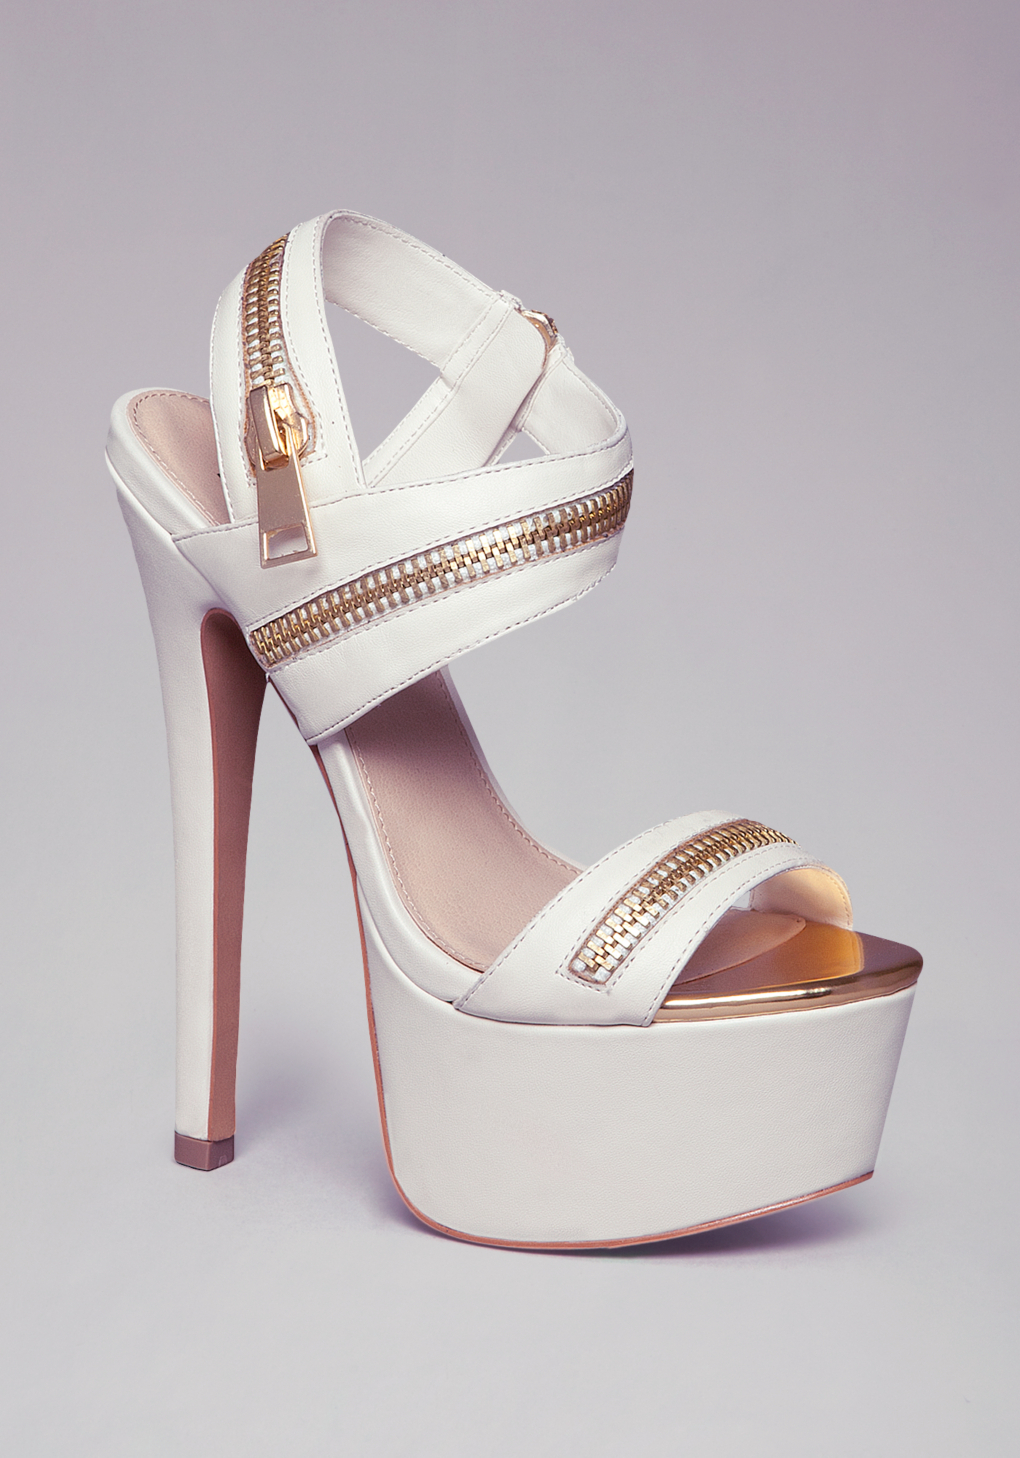 Bebe Yudelka Zipper Sandals in White | Lyst